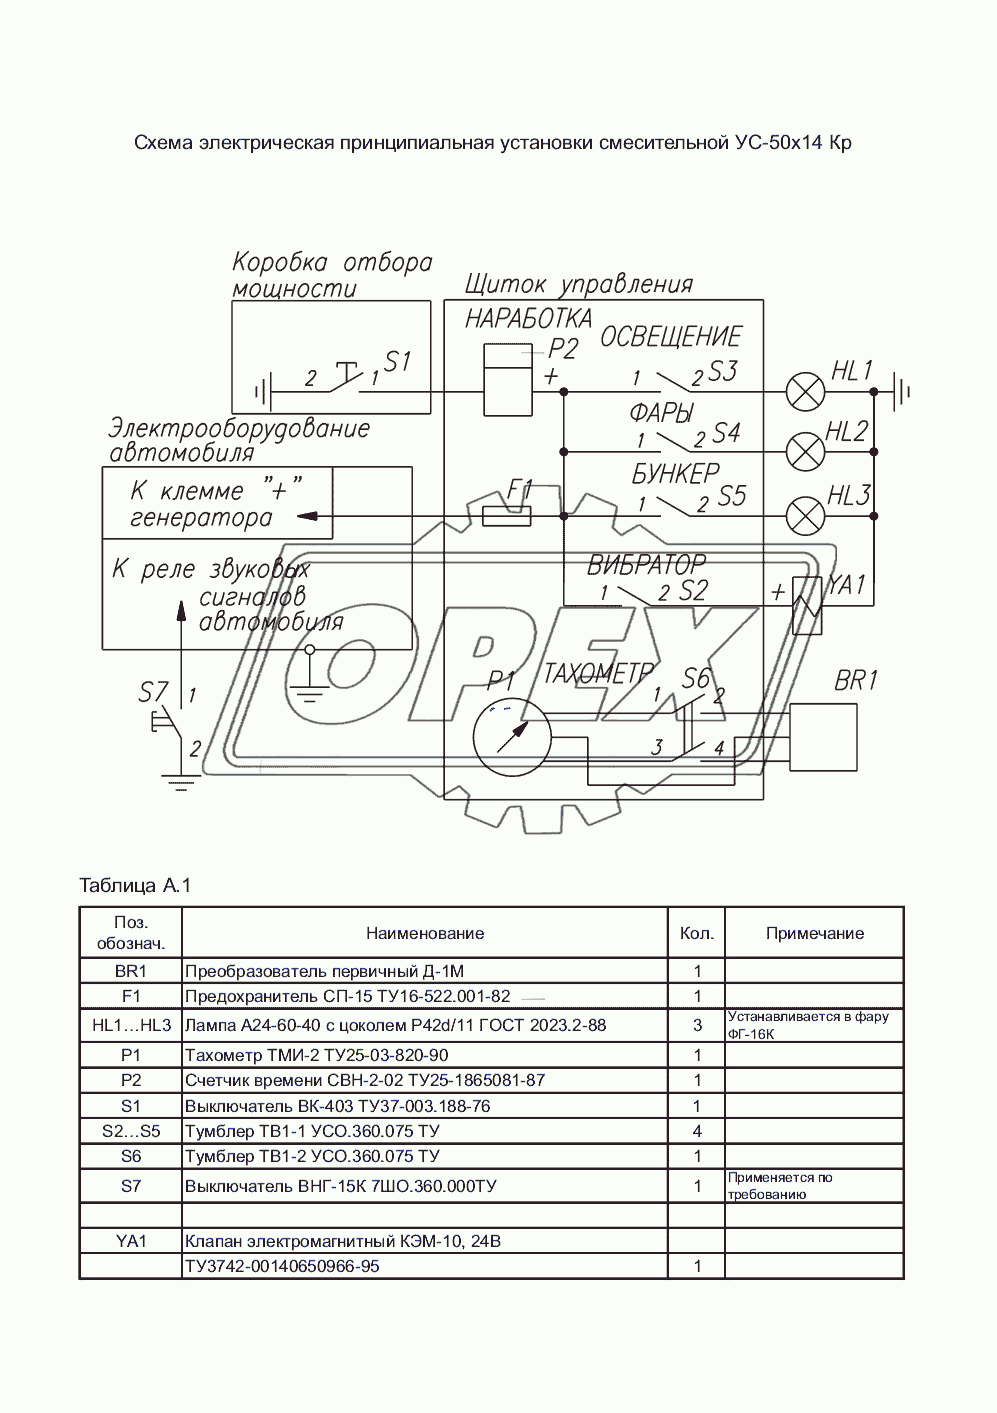 Схема электрическая принципиальная установки смесительной УС-50х14 Кр